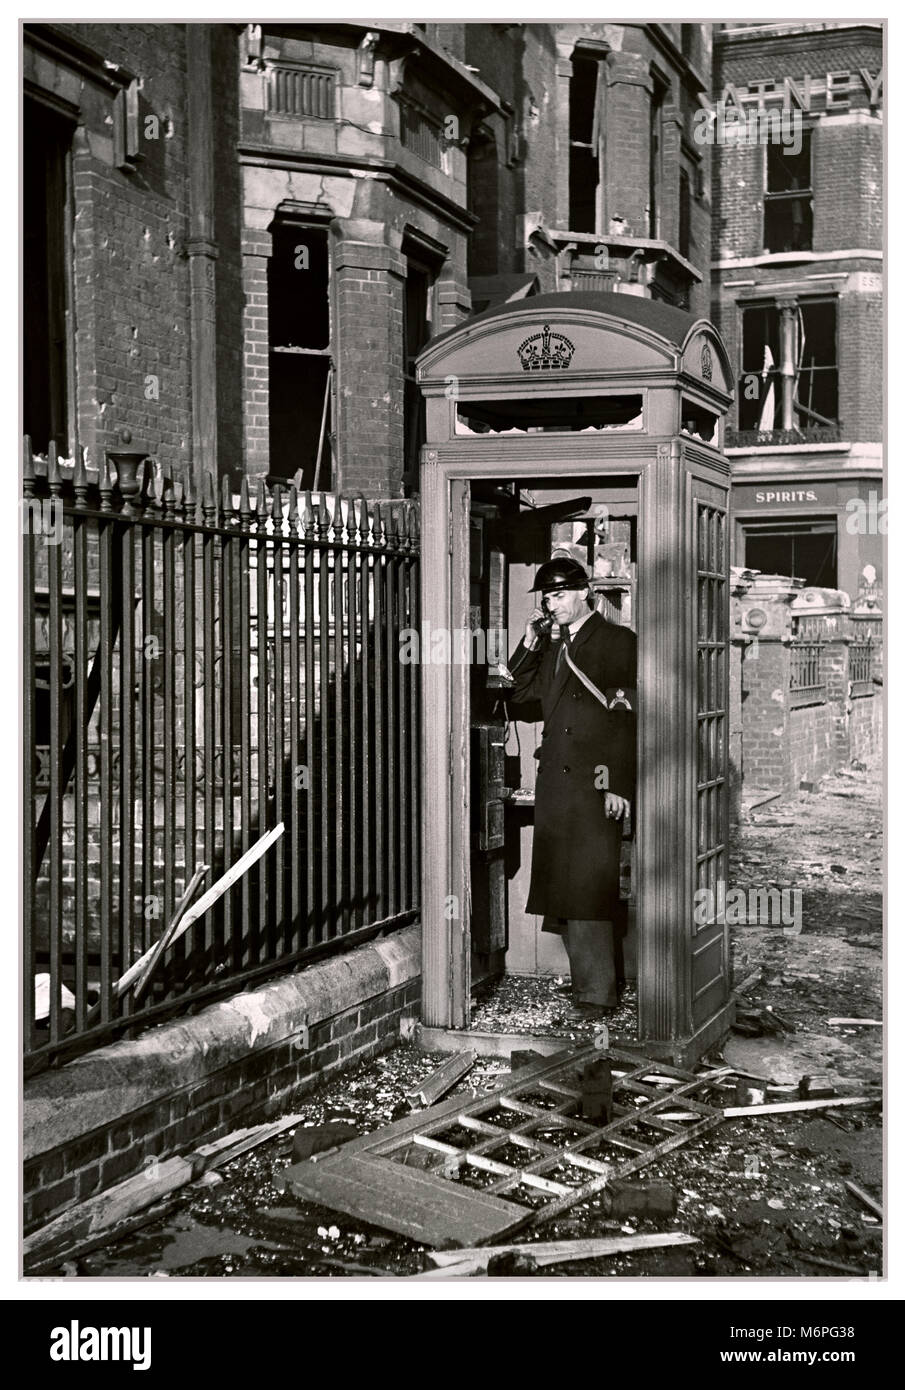 Vintage 1940 WW2 blitz sur Londres image de Londres bombardée rue avec toujours à l'aide des gardes de la traditionnelle boîte de téléphone malgré les dommages importants.... Vivre ensemble..." Banque D'Images